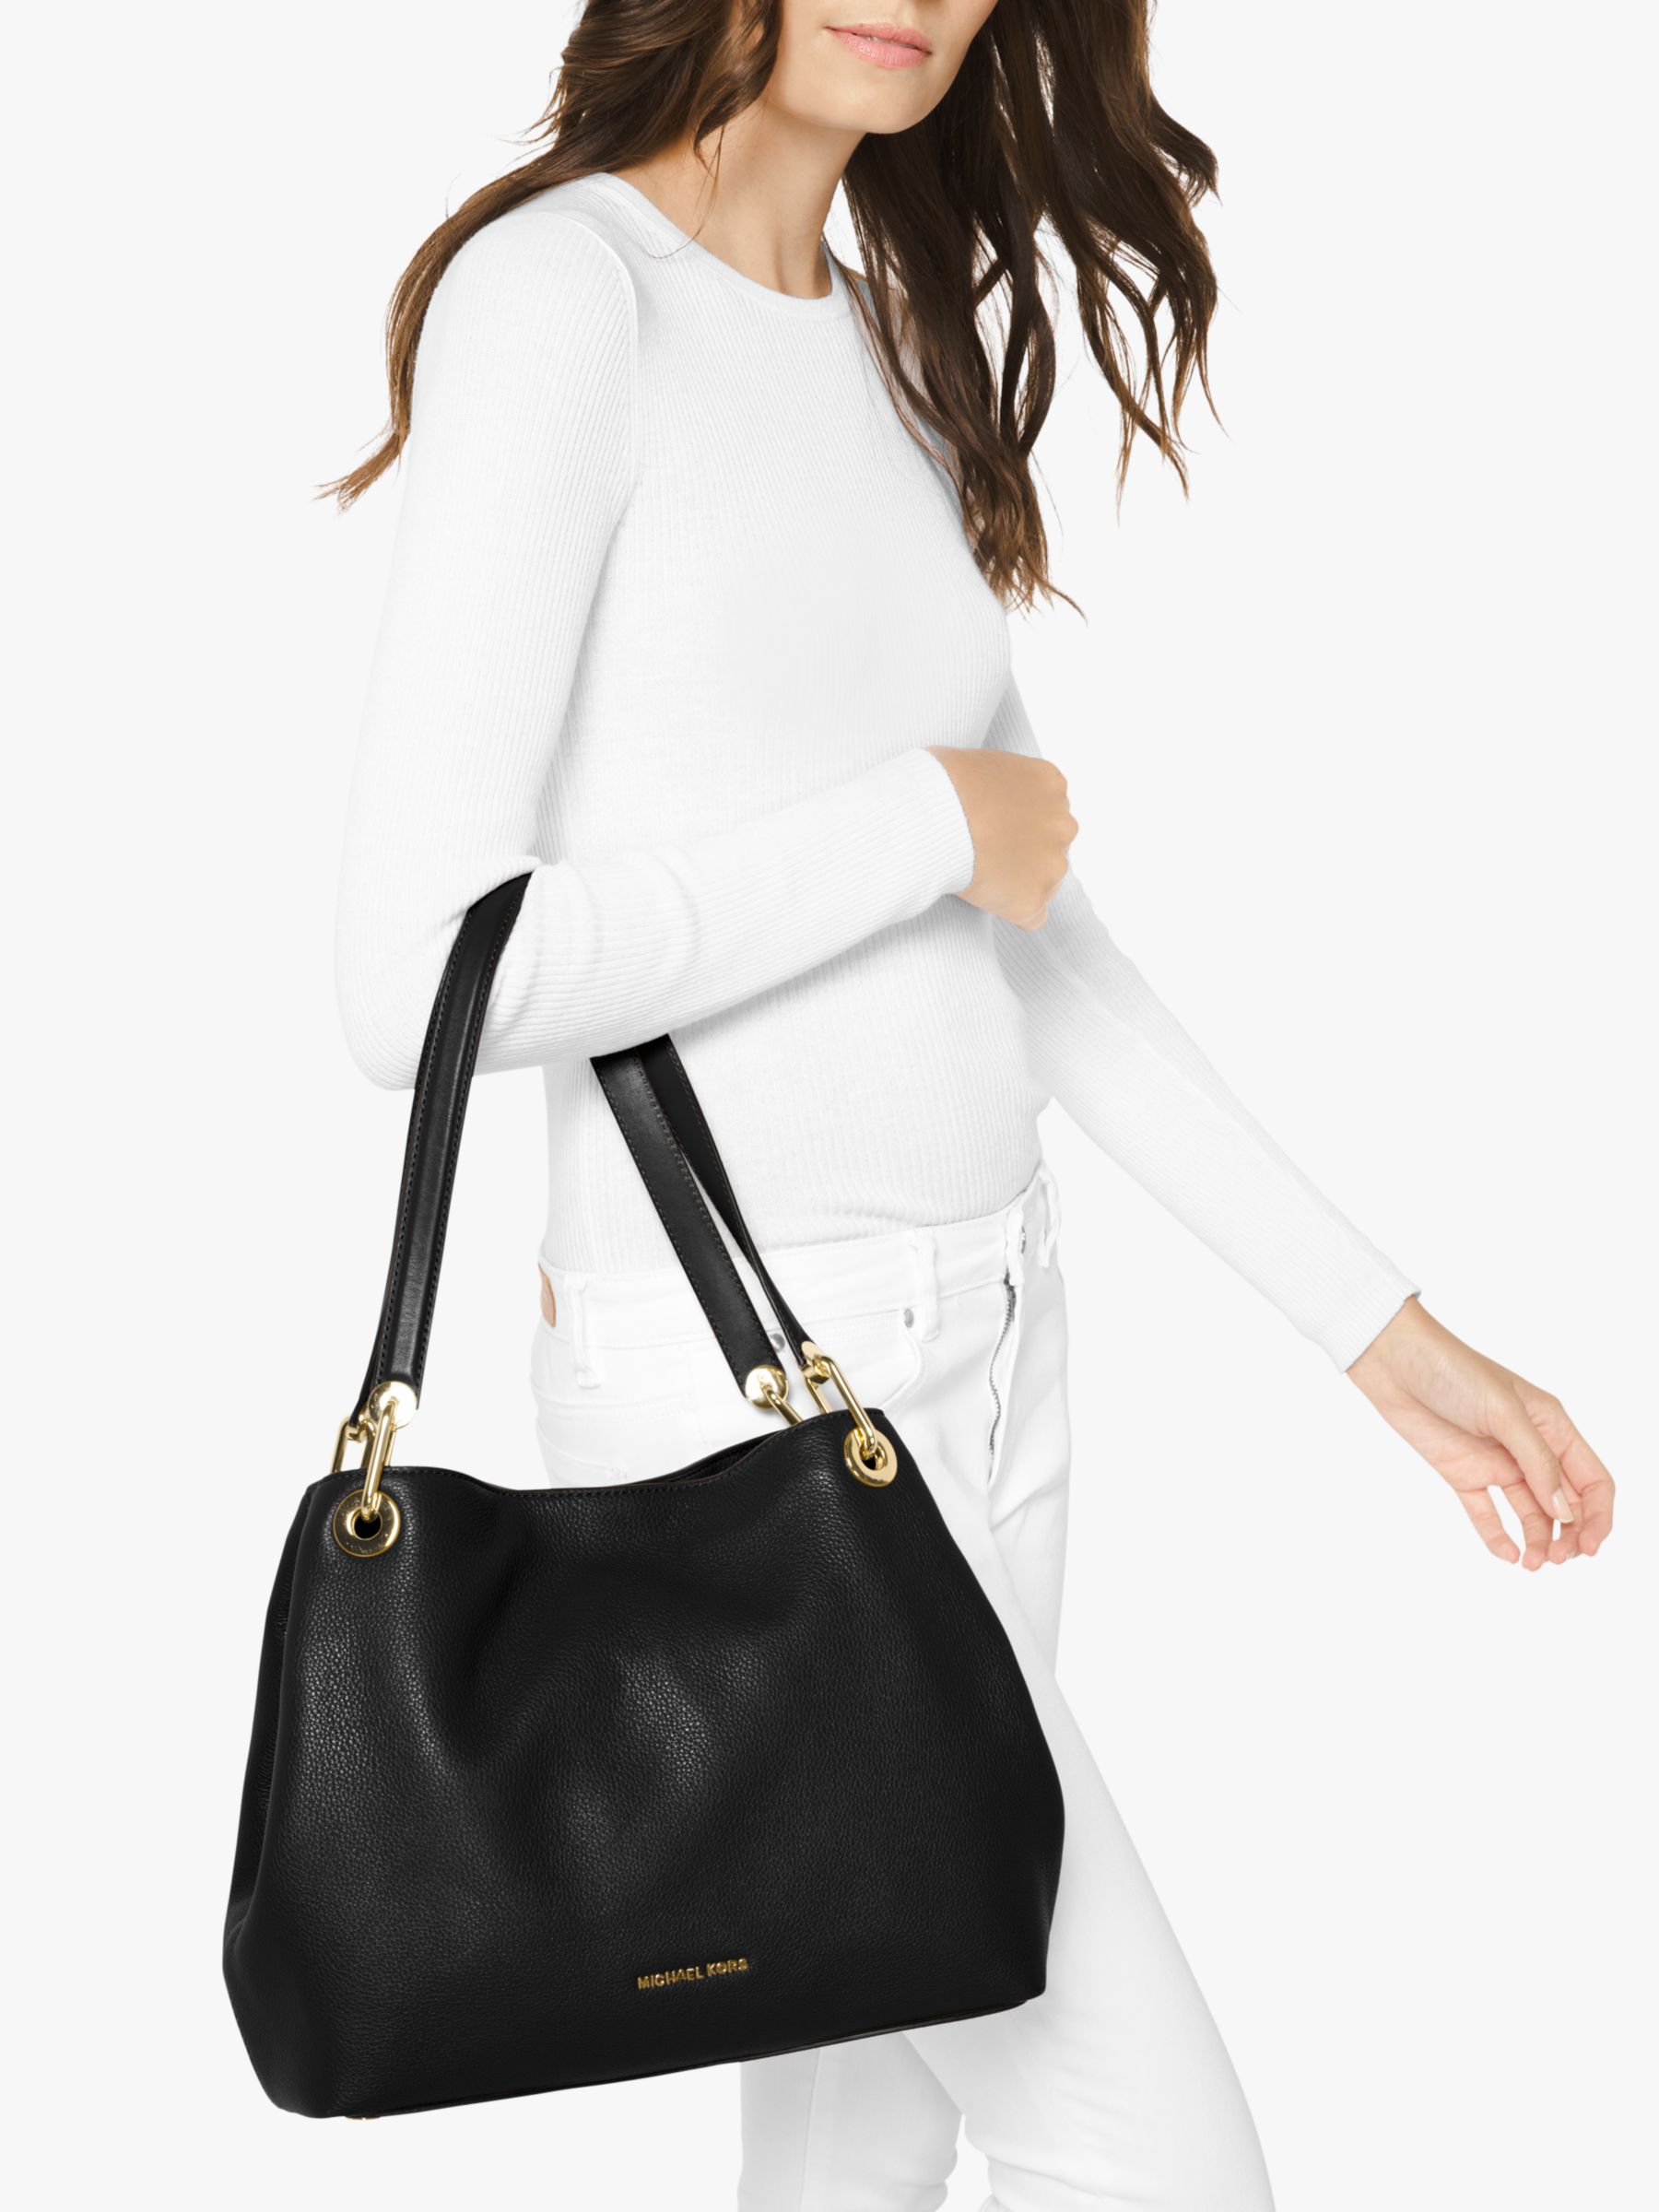 Buy the Michael Kors Shoulder Bag Black